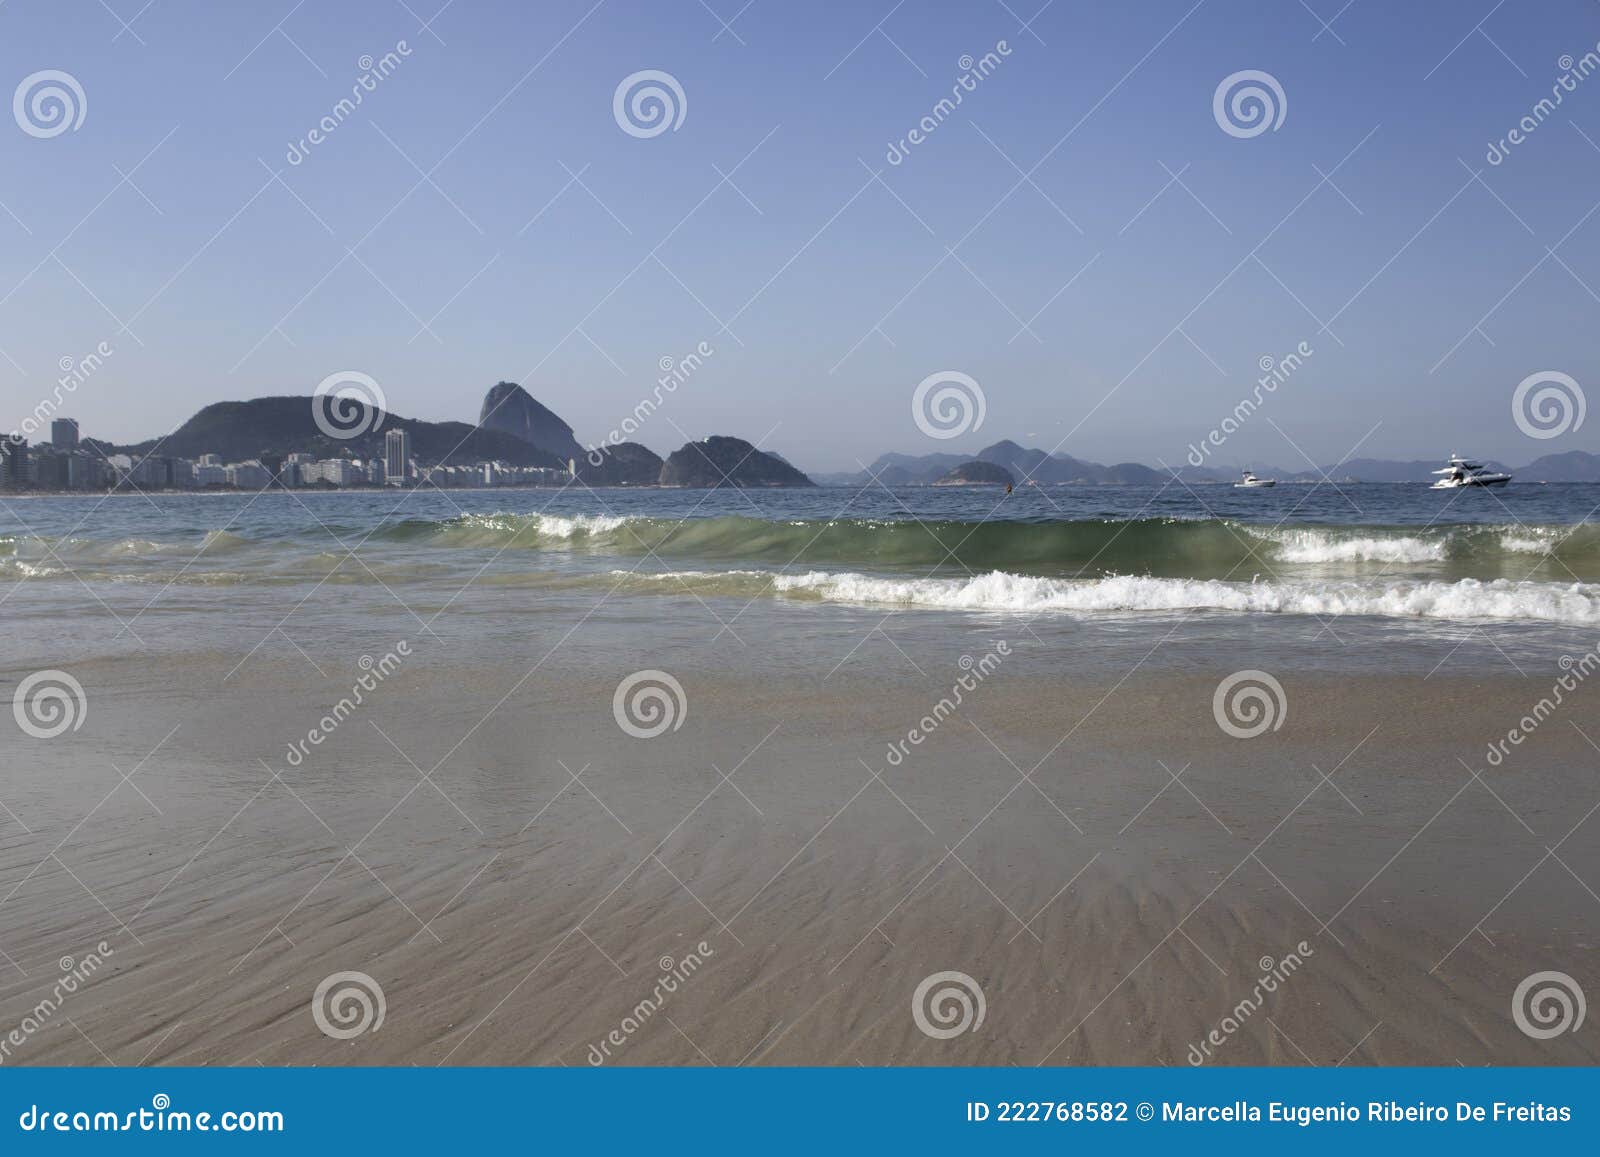 o mar de copacabana, suas ondas